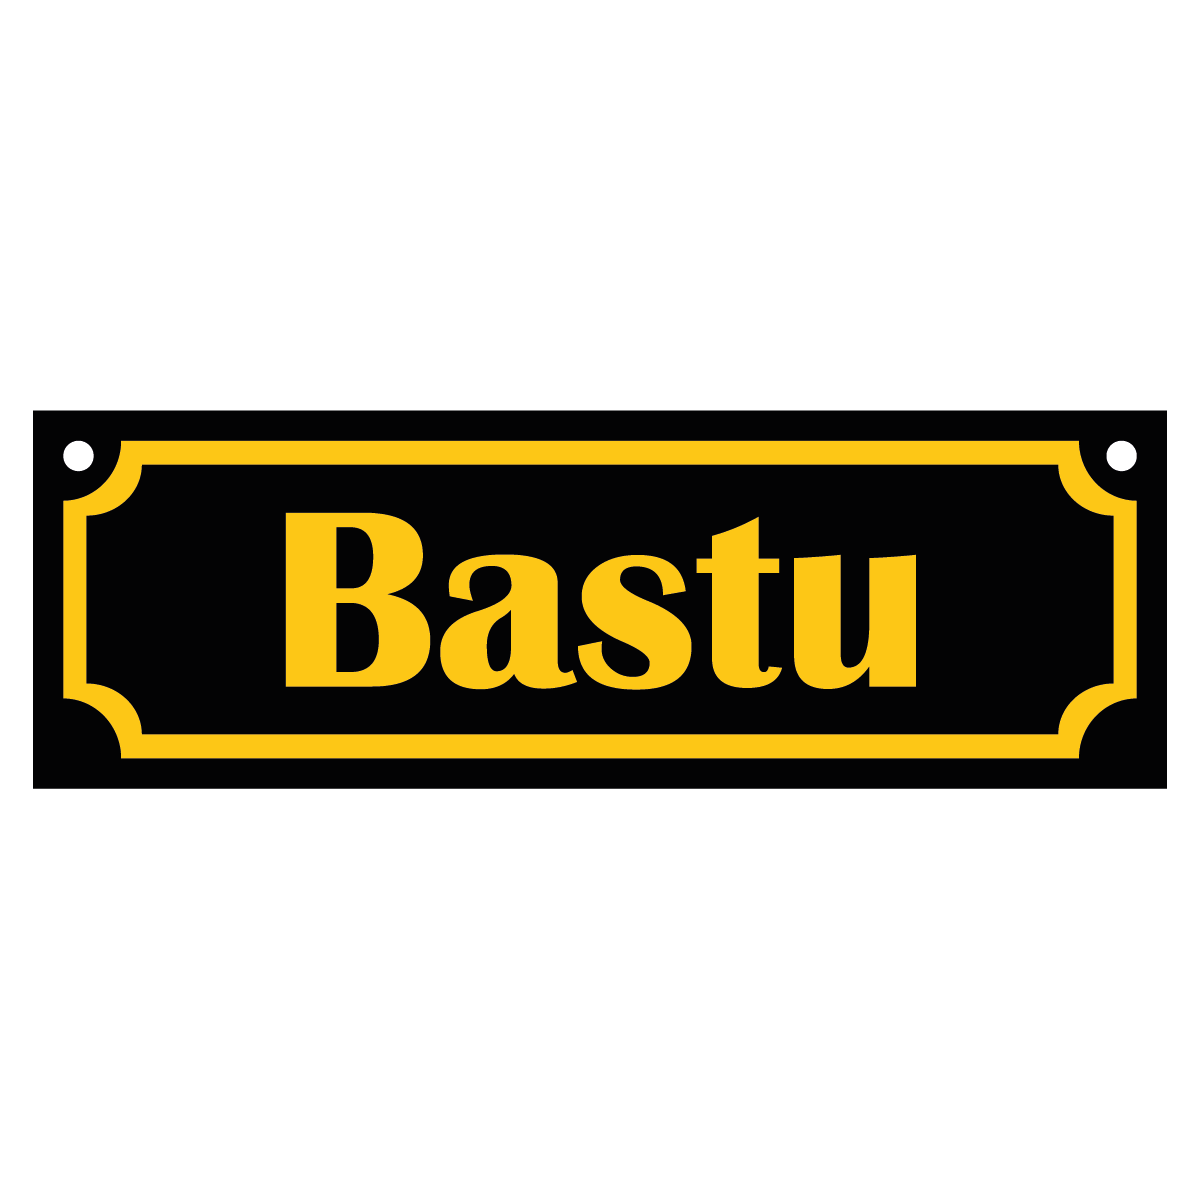 Bastu - Skylt - 150x50mm - Svart - Gul